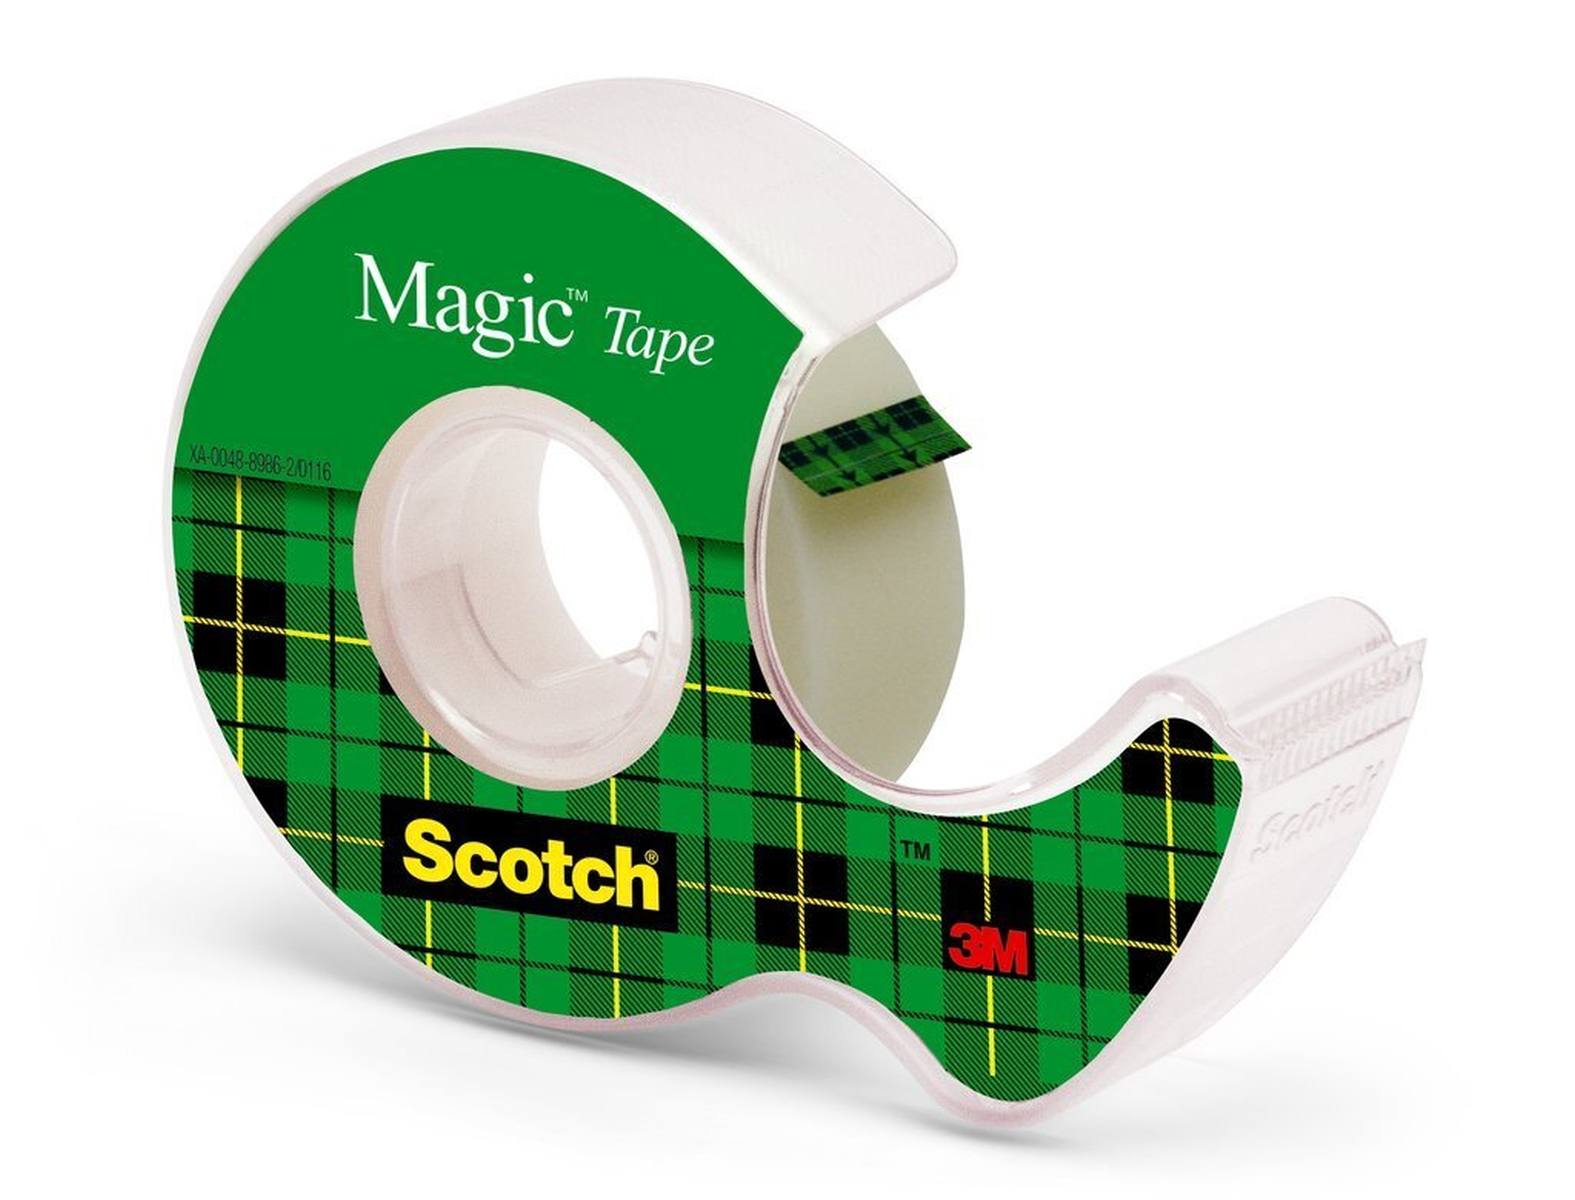 nastro adesivo 3M Scotch Magic 1 rotolo 19 mm x 7,5 m + 1 dispenser manuale